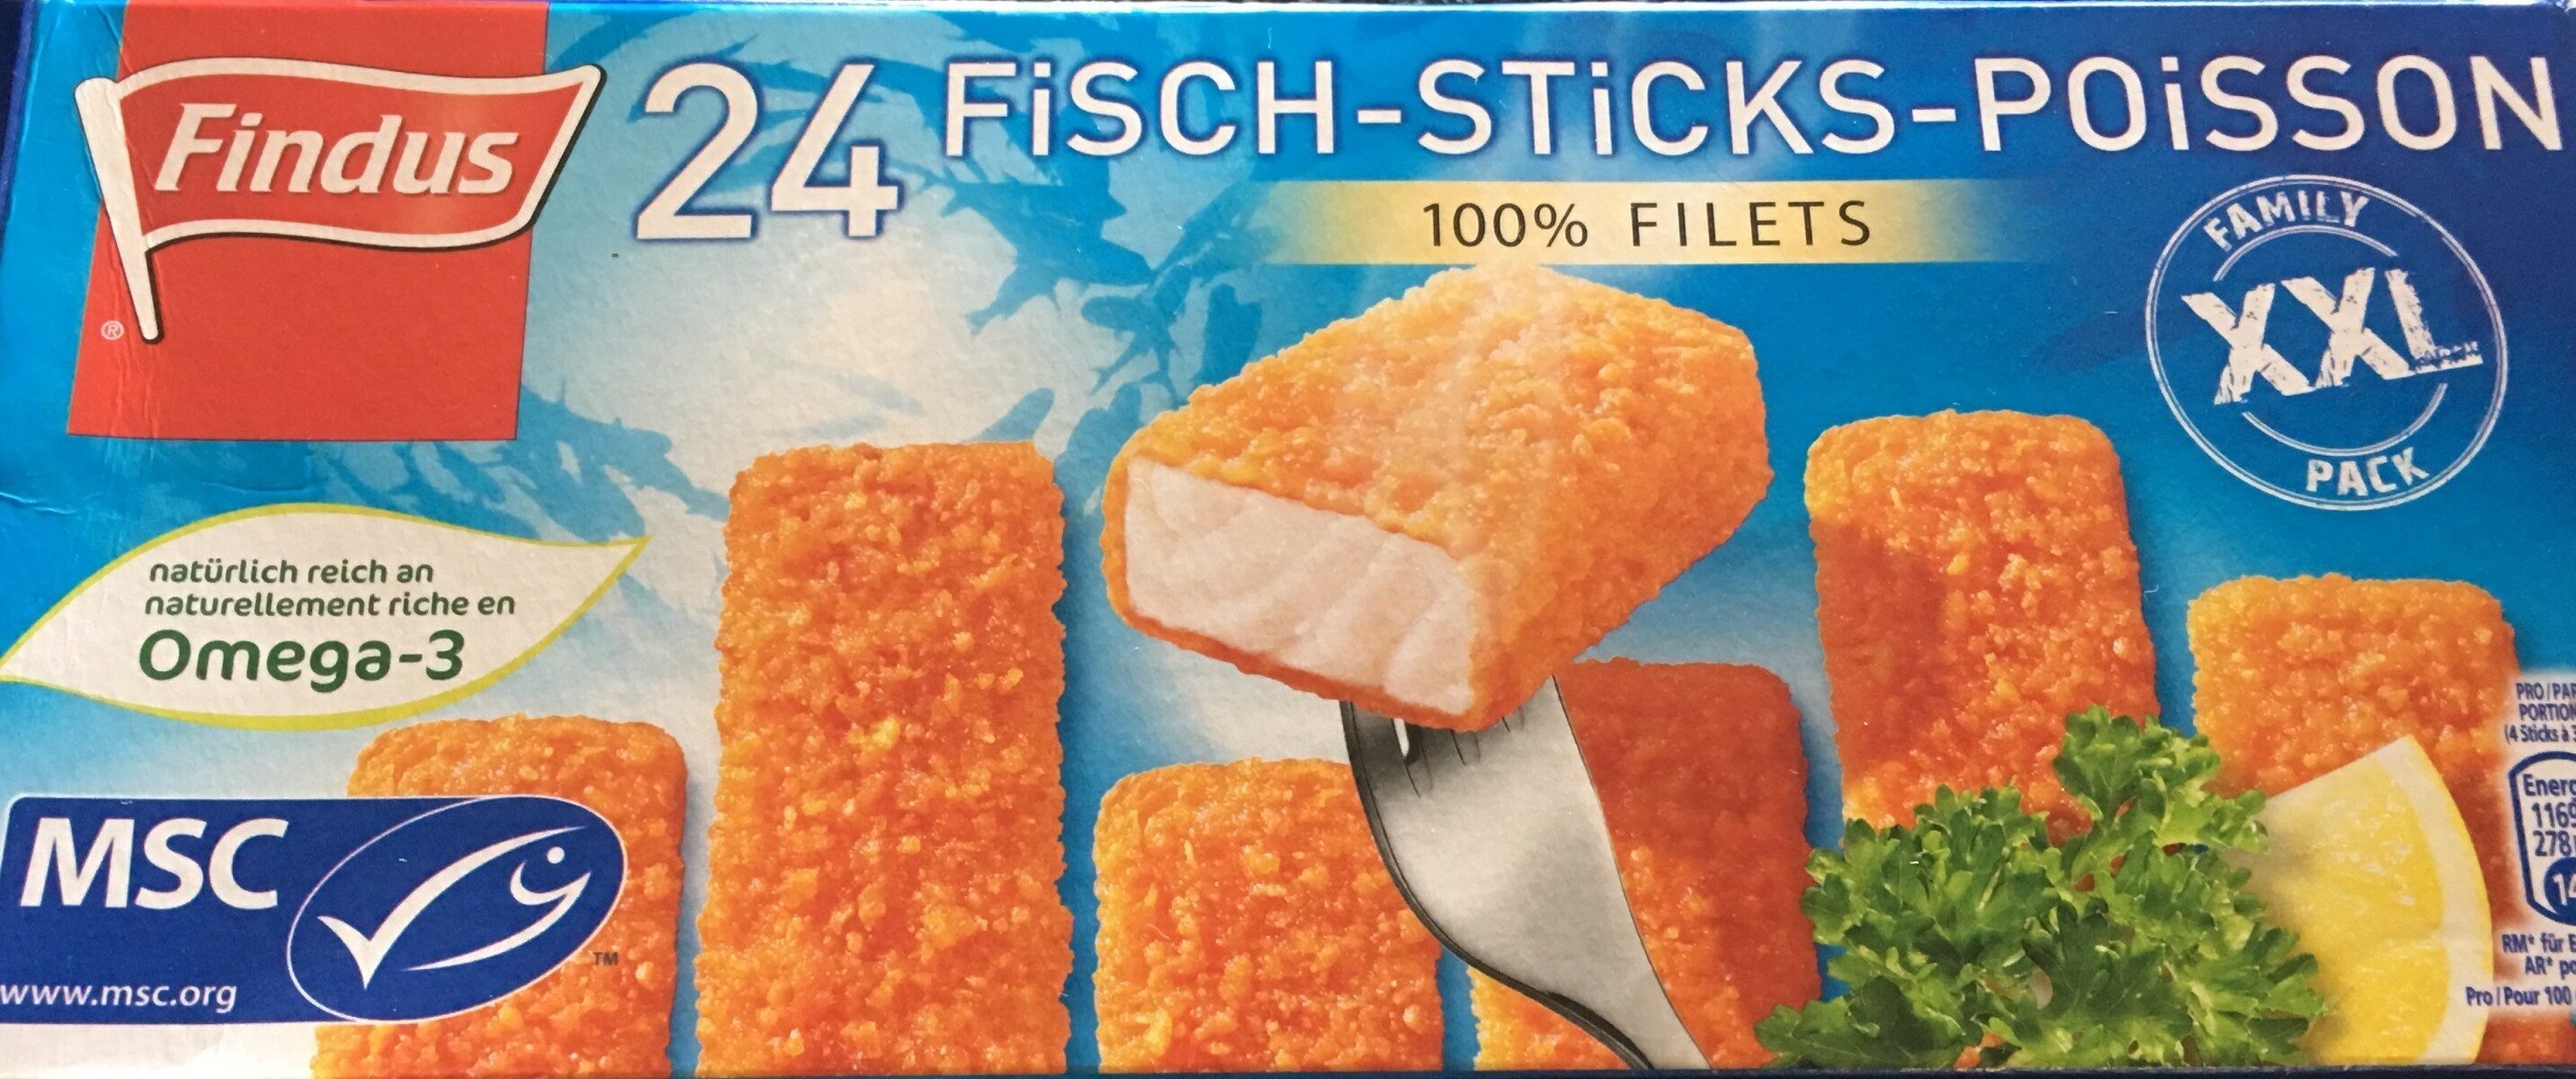 sticks poisson - Produkt - fr